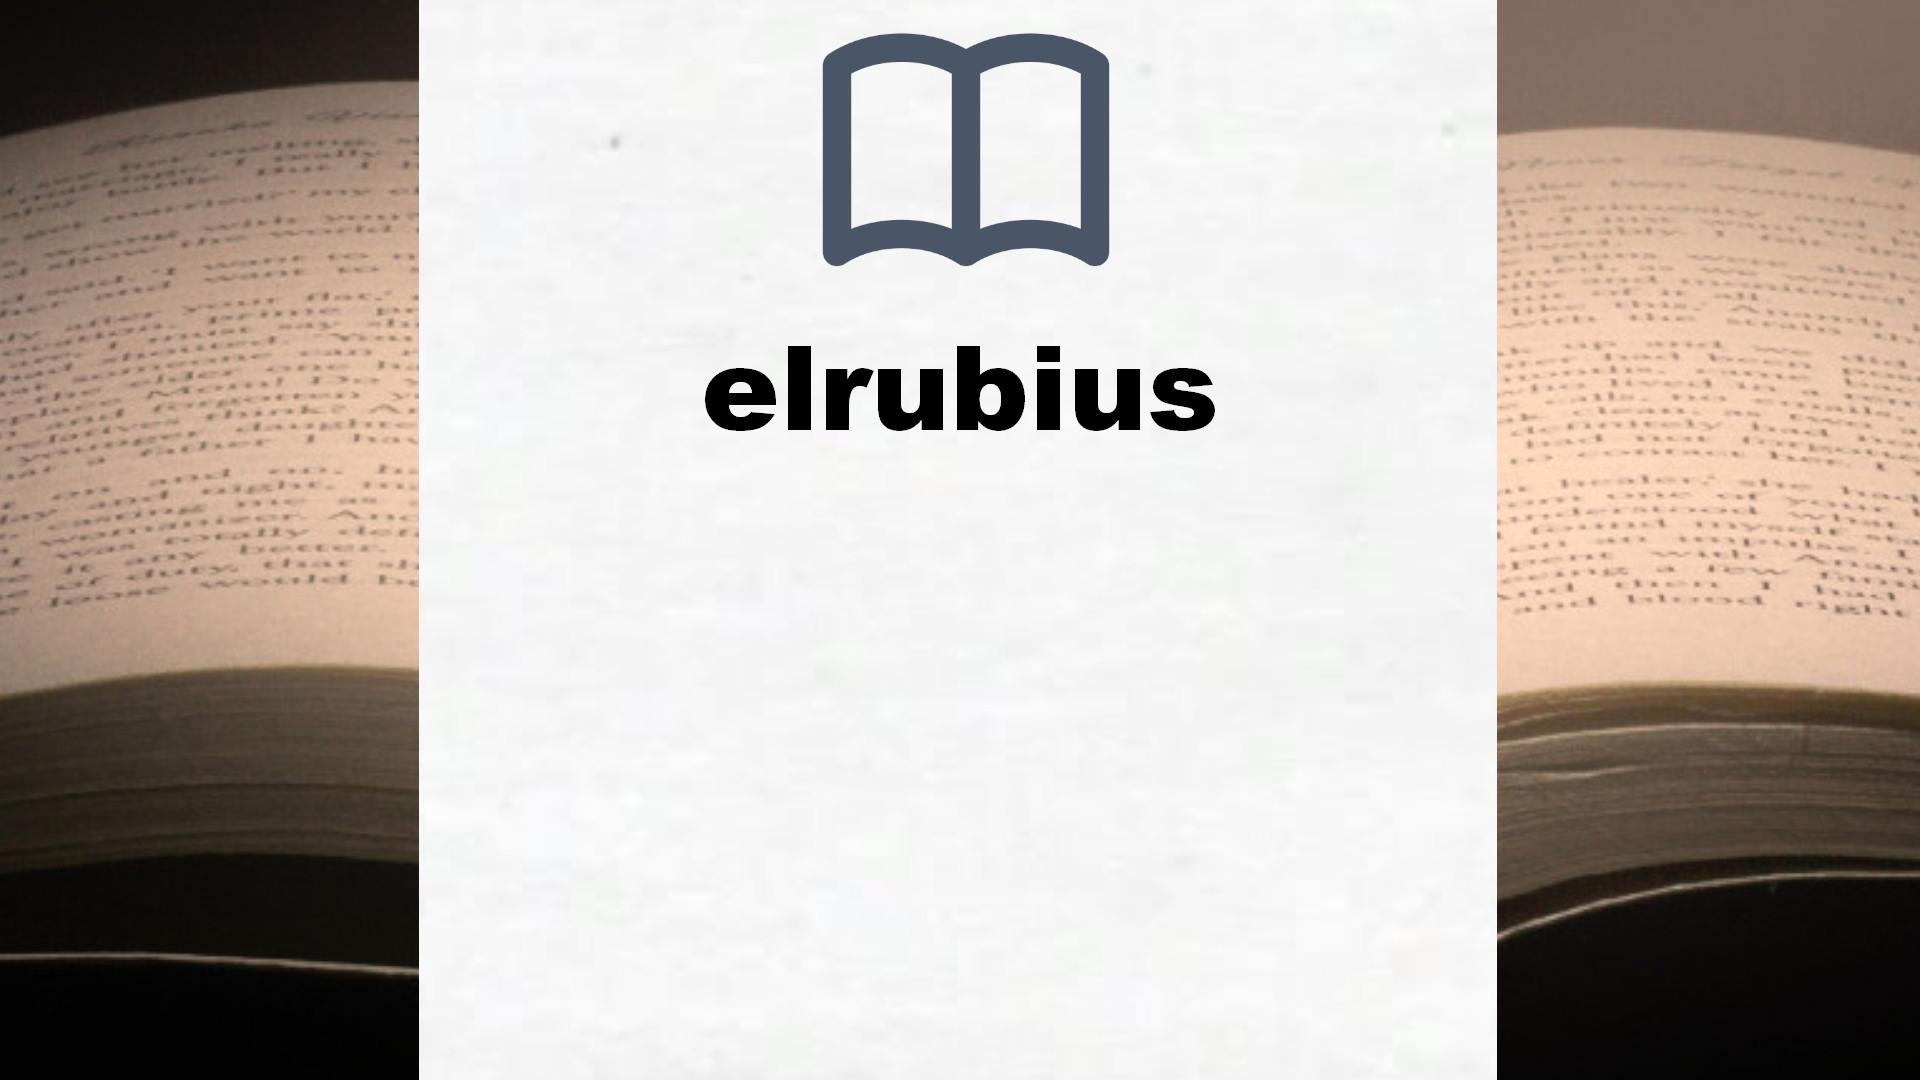 Libros elrubius